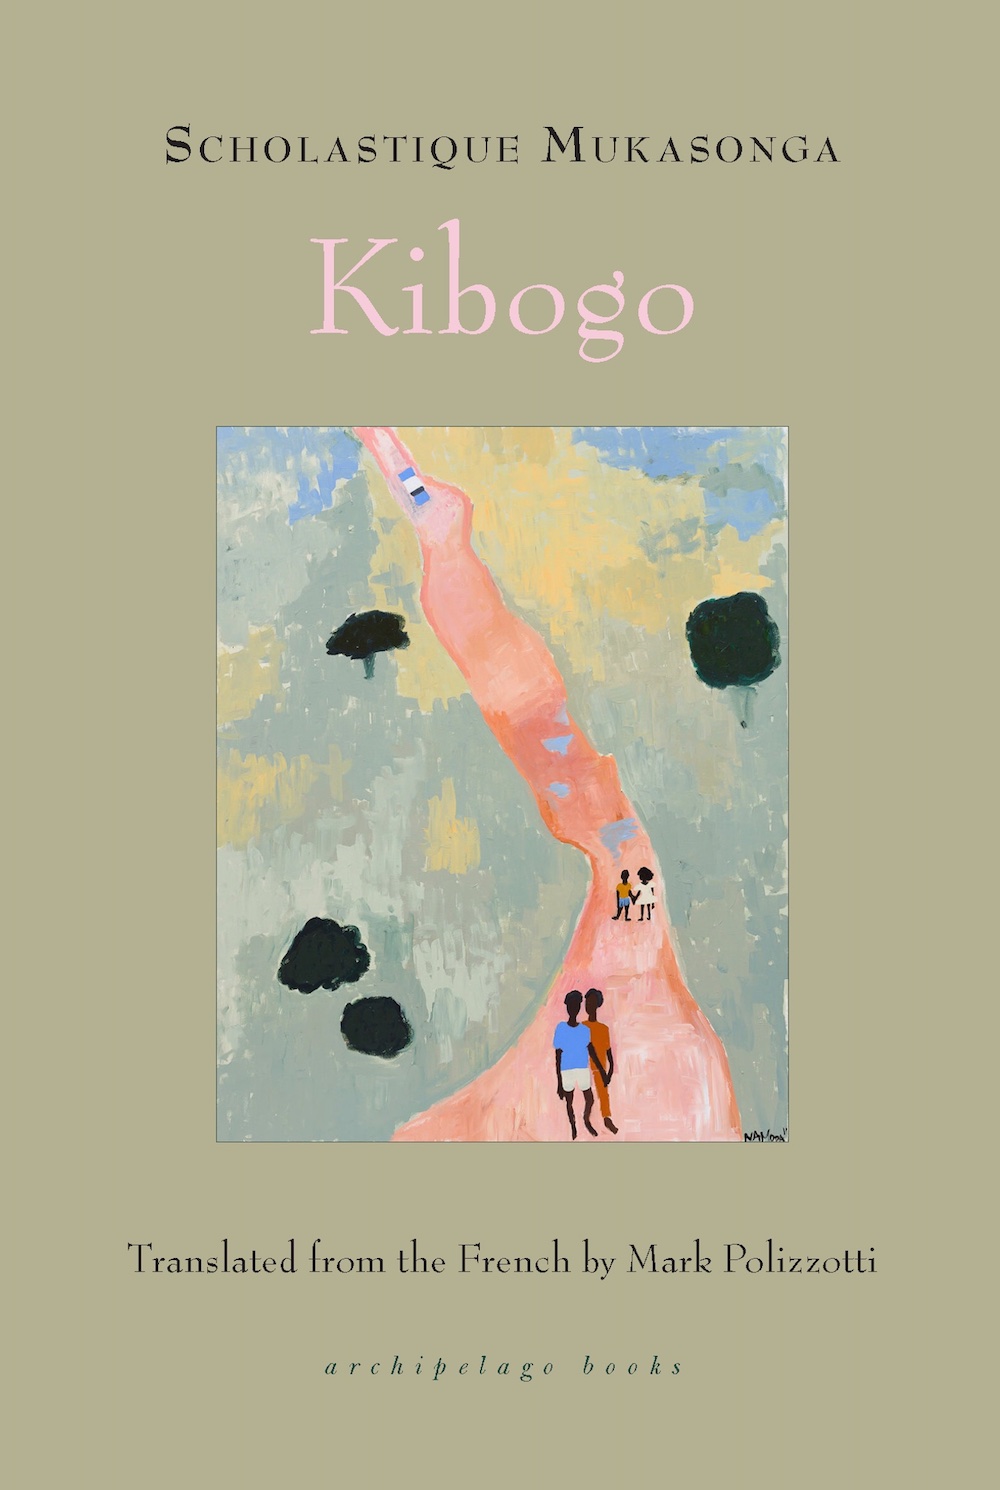 cover of scholastique mukasonga novel kibogo